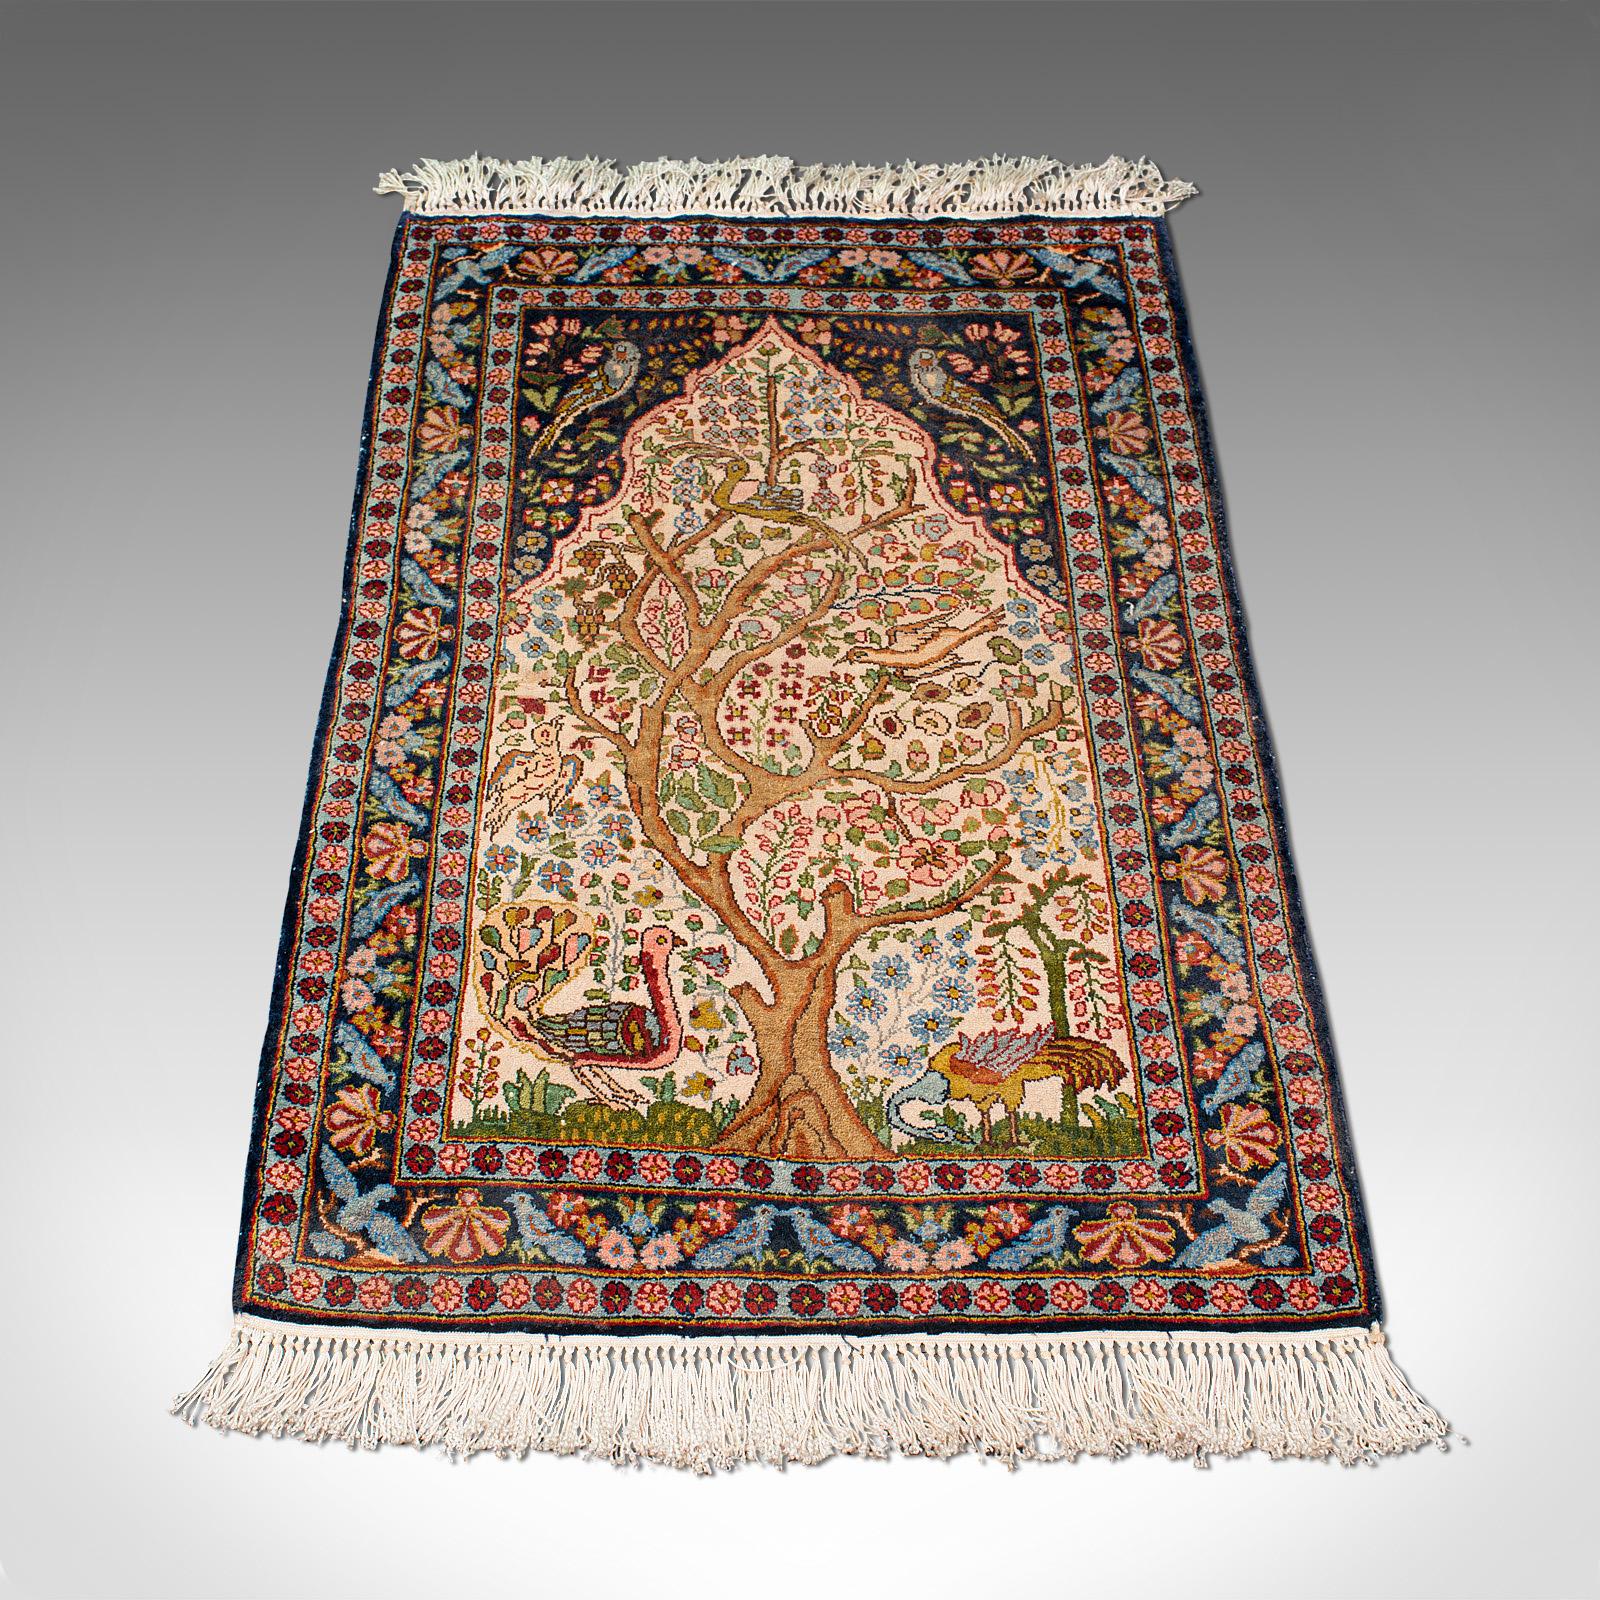 Dies ist ein Vintage-Baum des Lebens Teppich. Ein kaukasischer, gewebter kleiner Teppich oder Gebetsteppich aus der späten Art-déco-Periode, um 1940.

Mit 55cm x 95cm (21.75